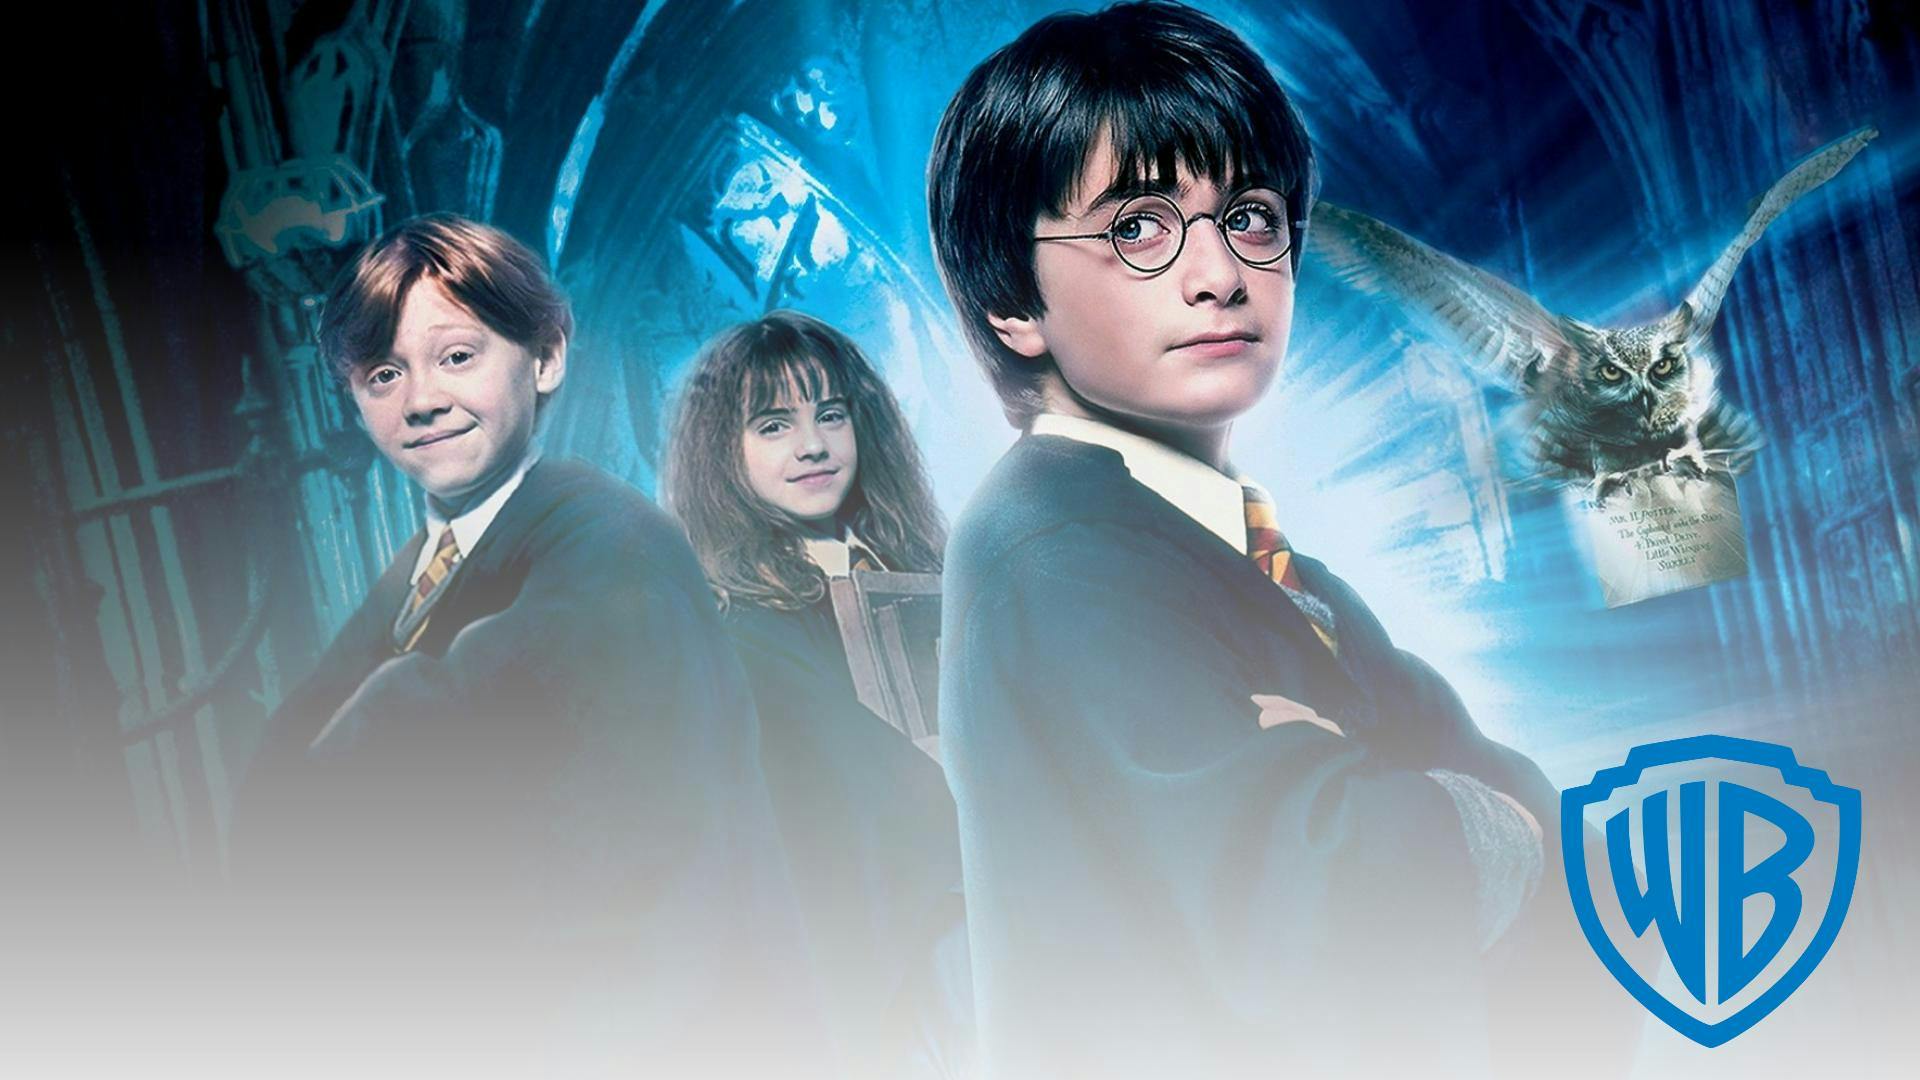 poster du film Harry Potter produit par Warner Bros